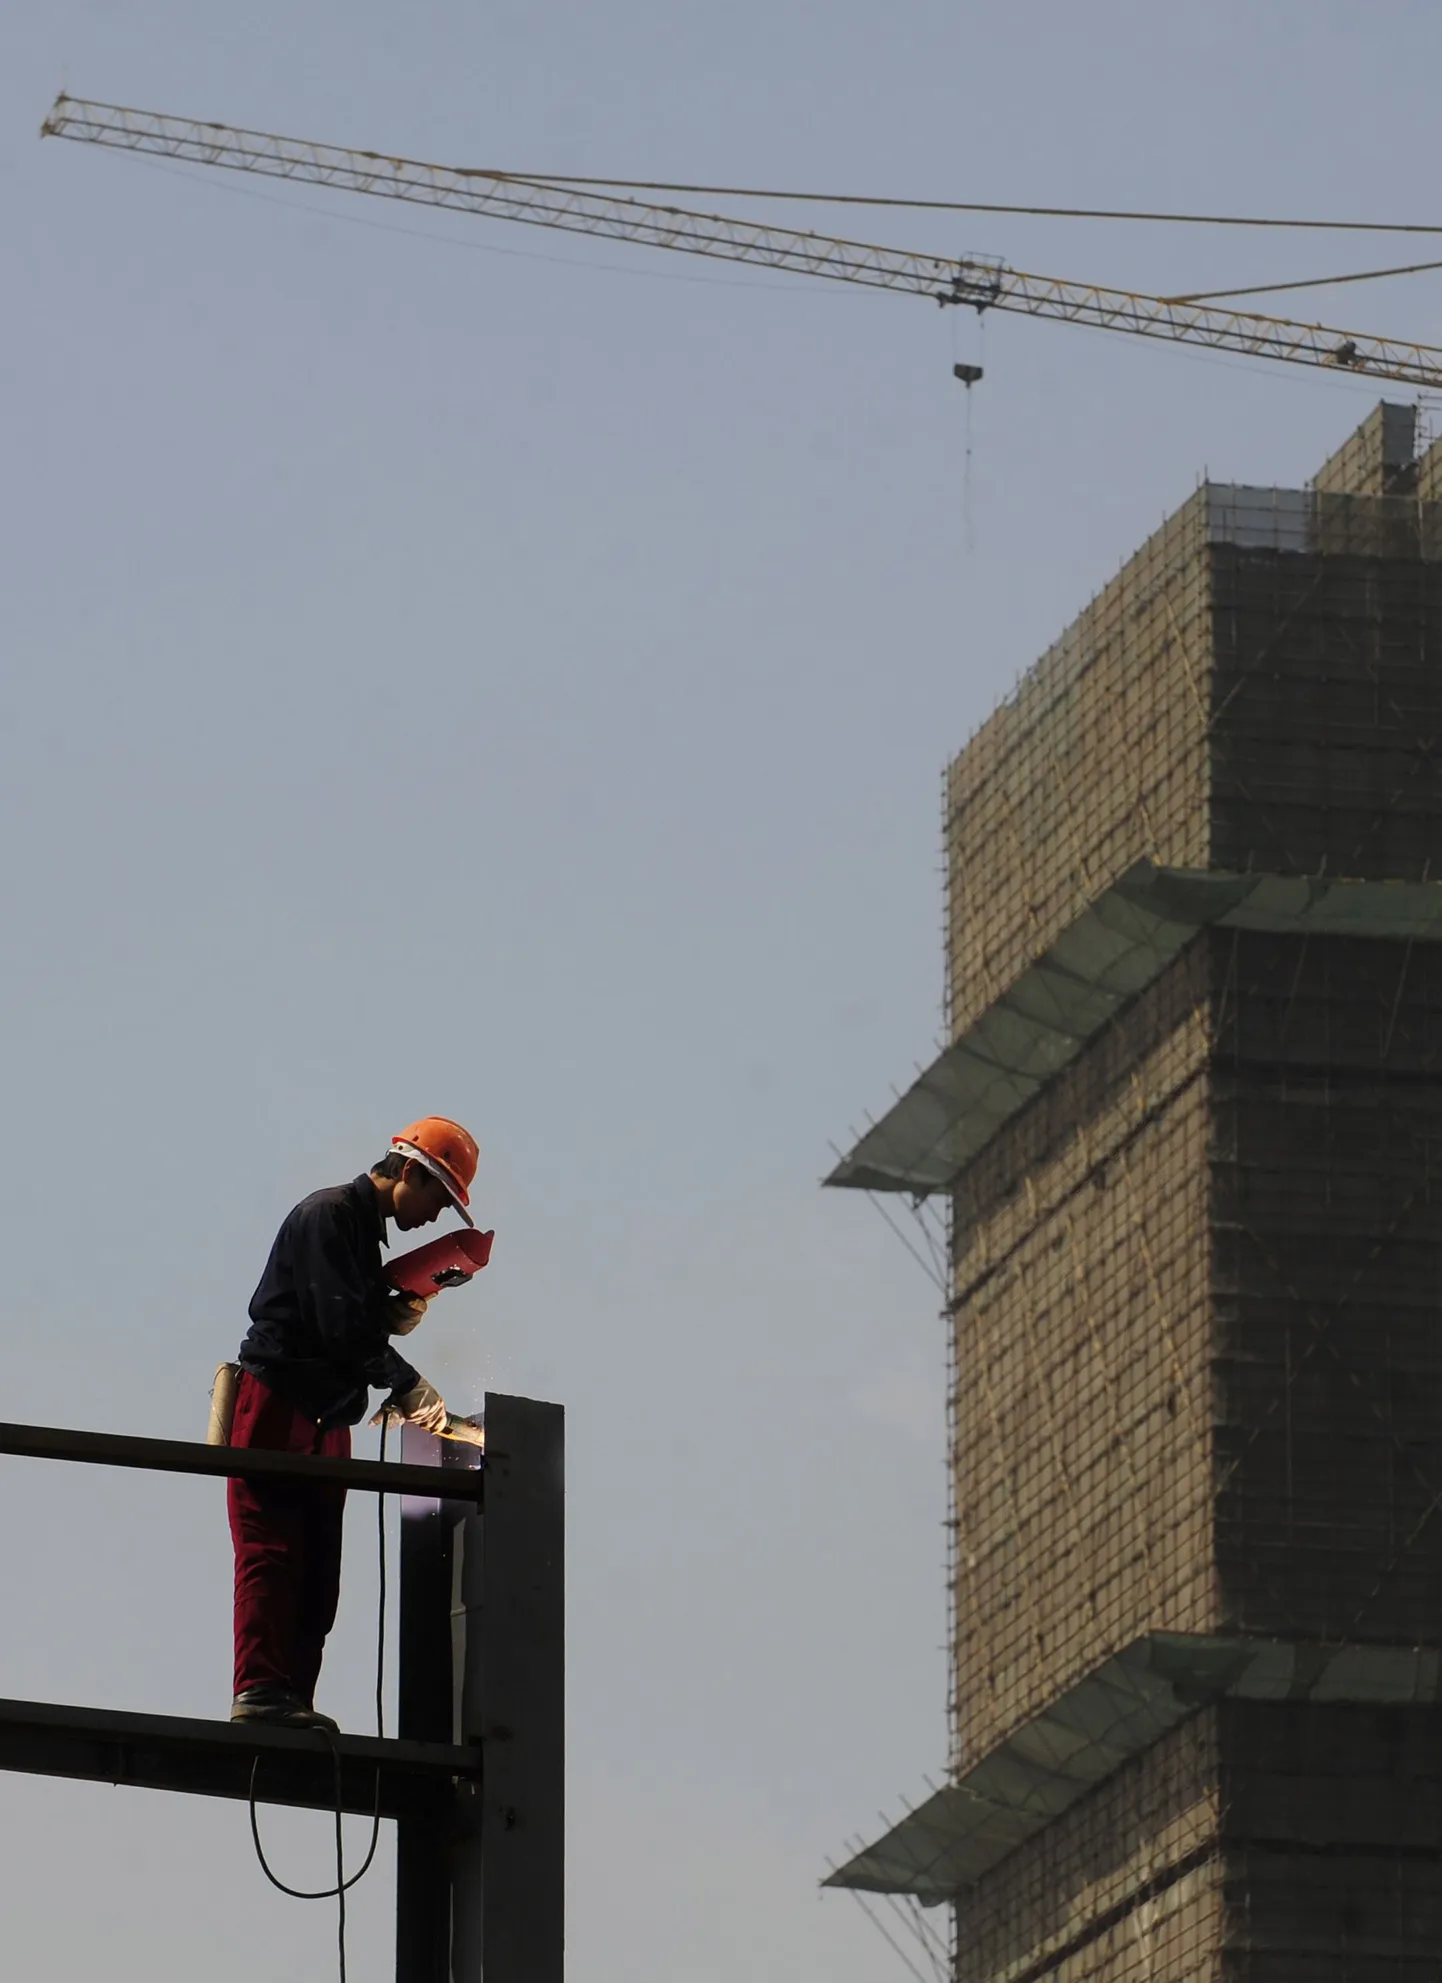 Ehitustööline Hiina Anhui provintsis Hefeis kinnisvaraprojekti reklaami alust keevitamas.